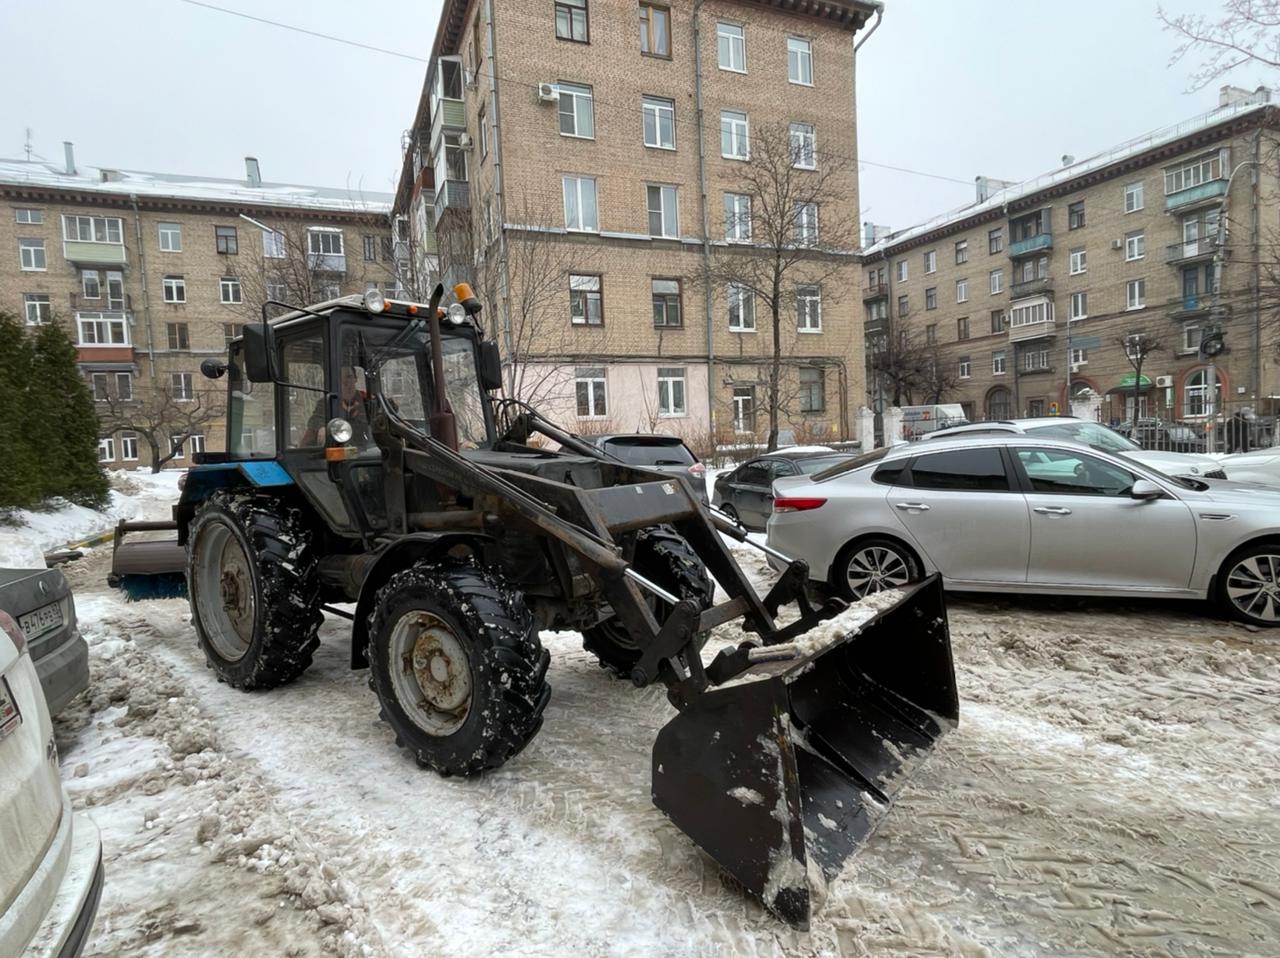 О расчистке снега на территории Железнодорожного района